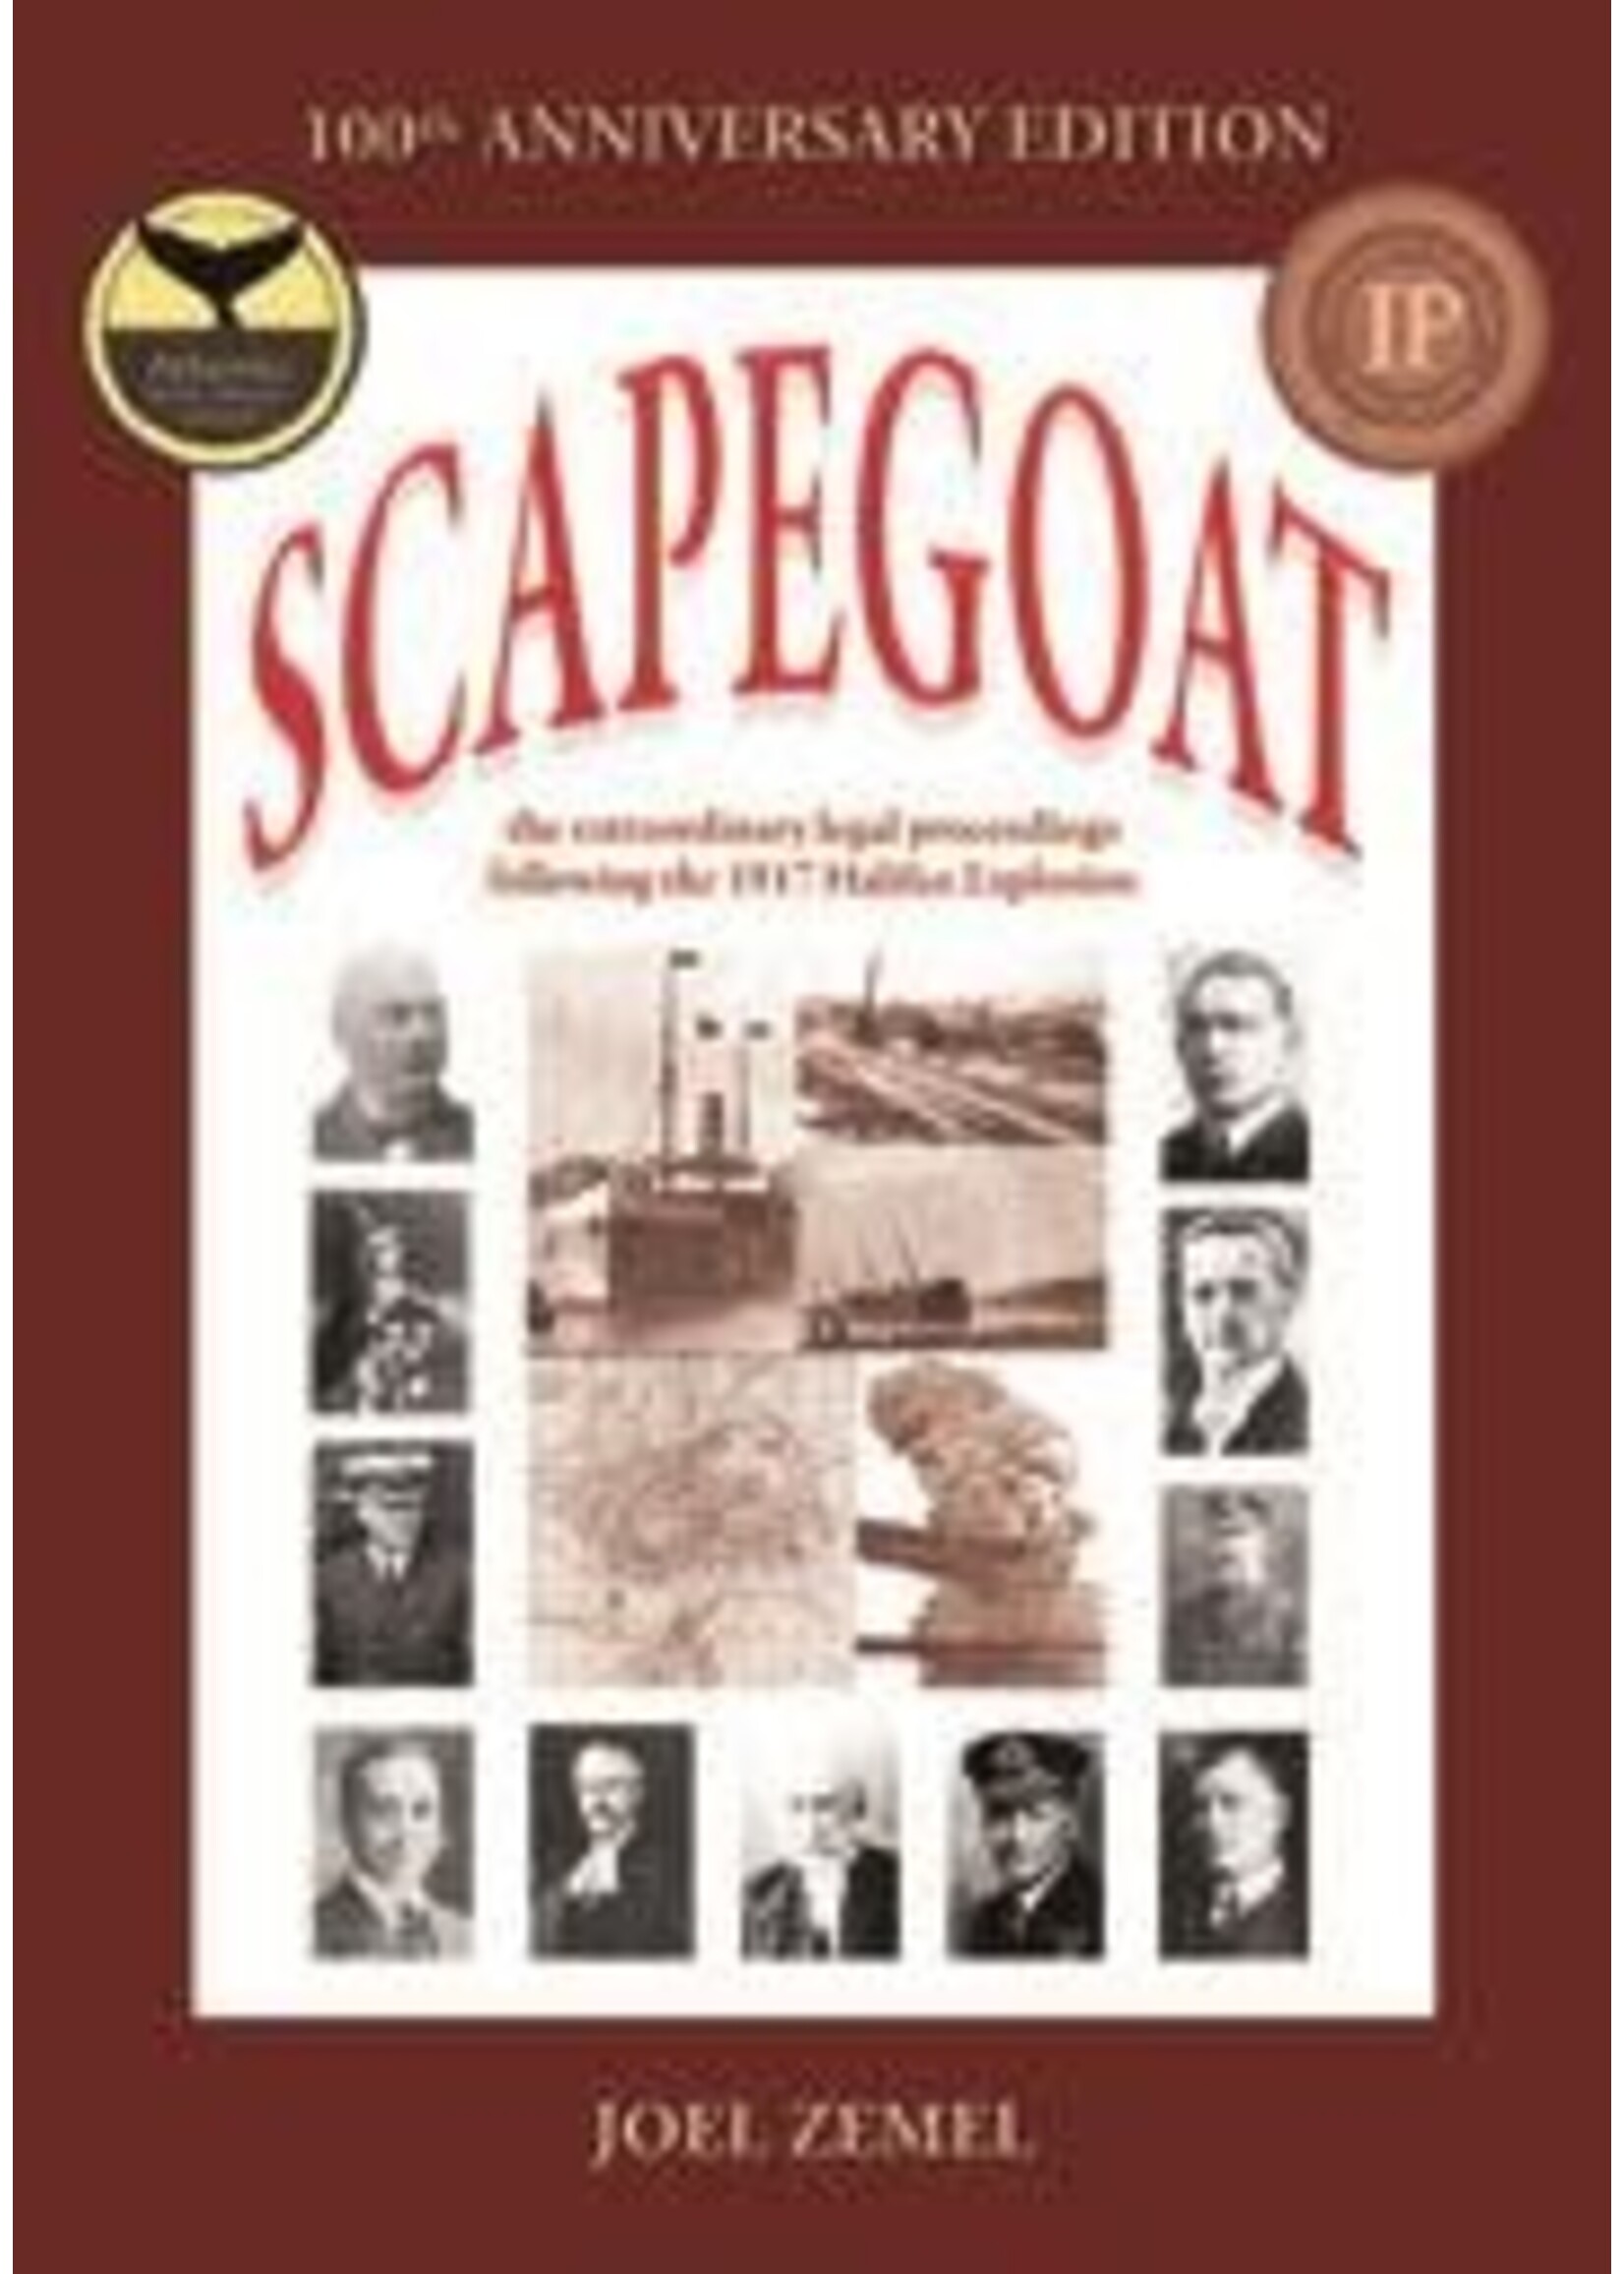 Scapegoat, 100th Anniversary Ed. by Joel Zemel